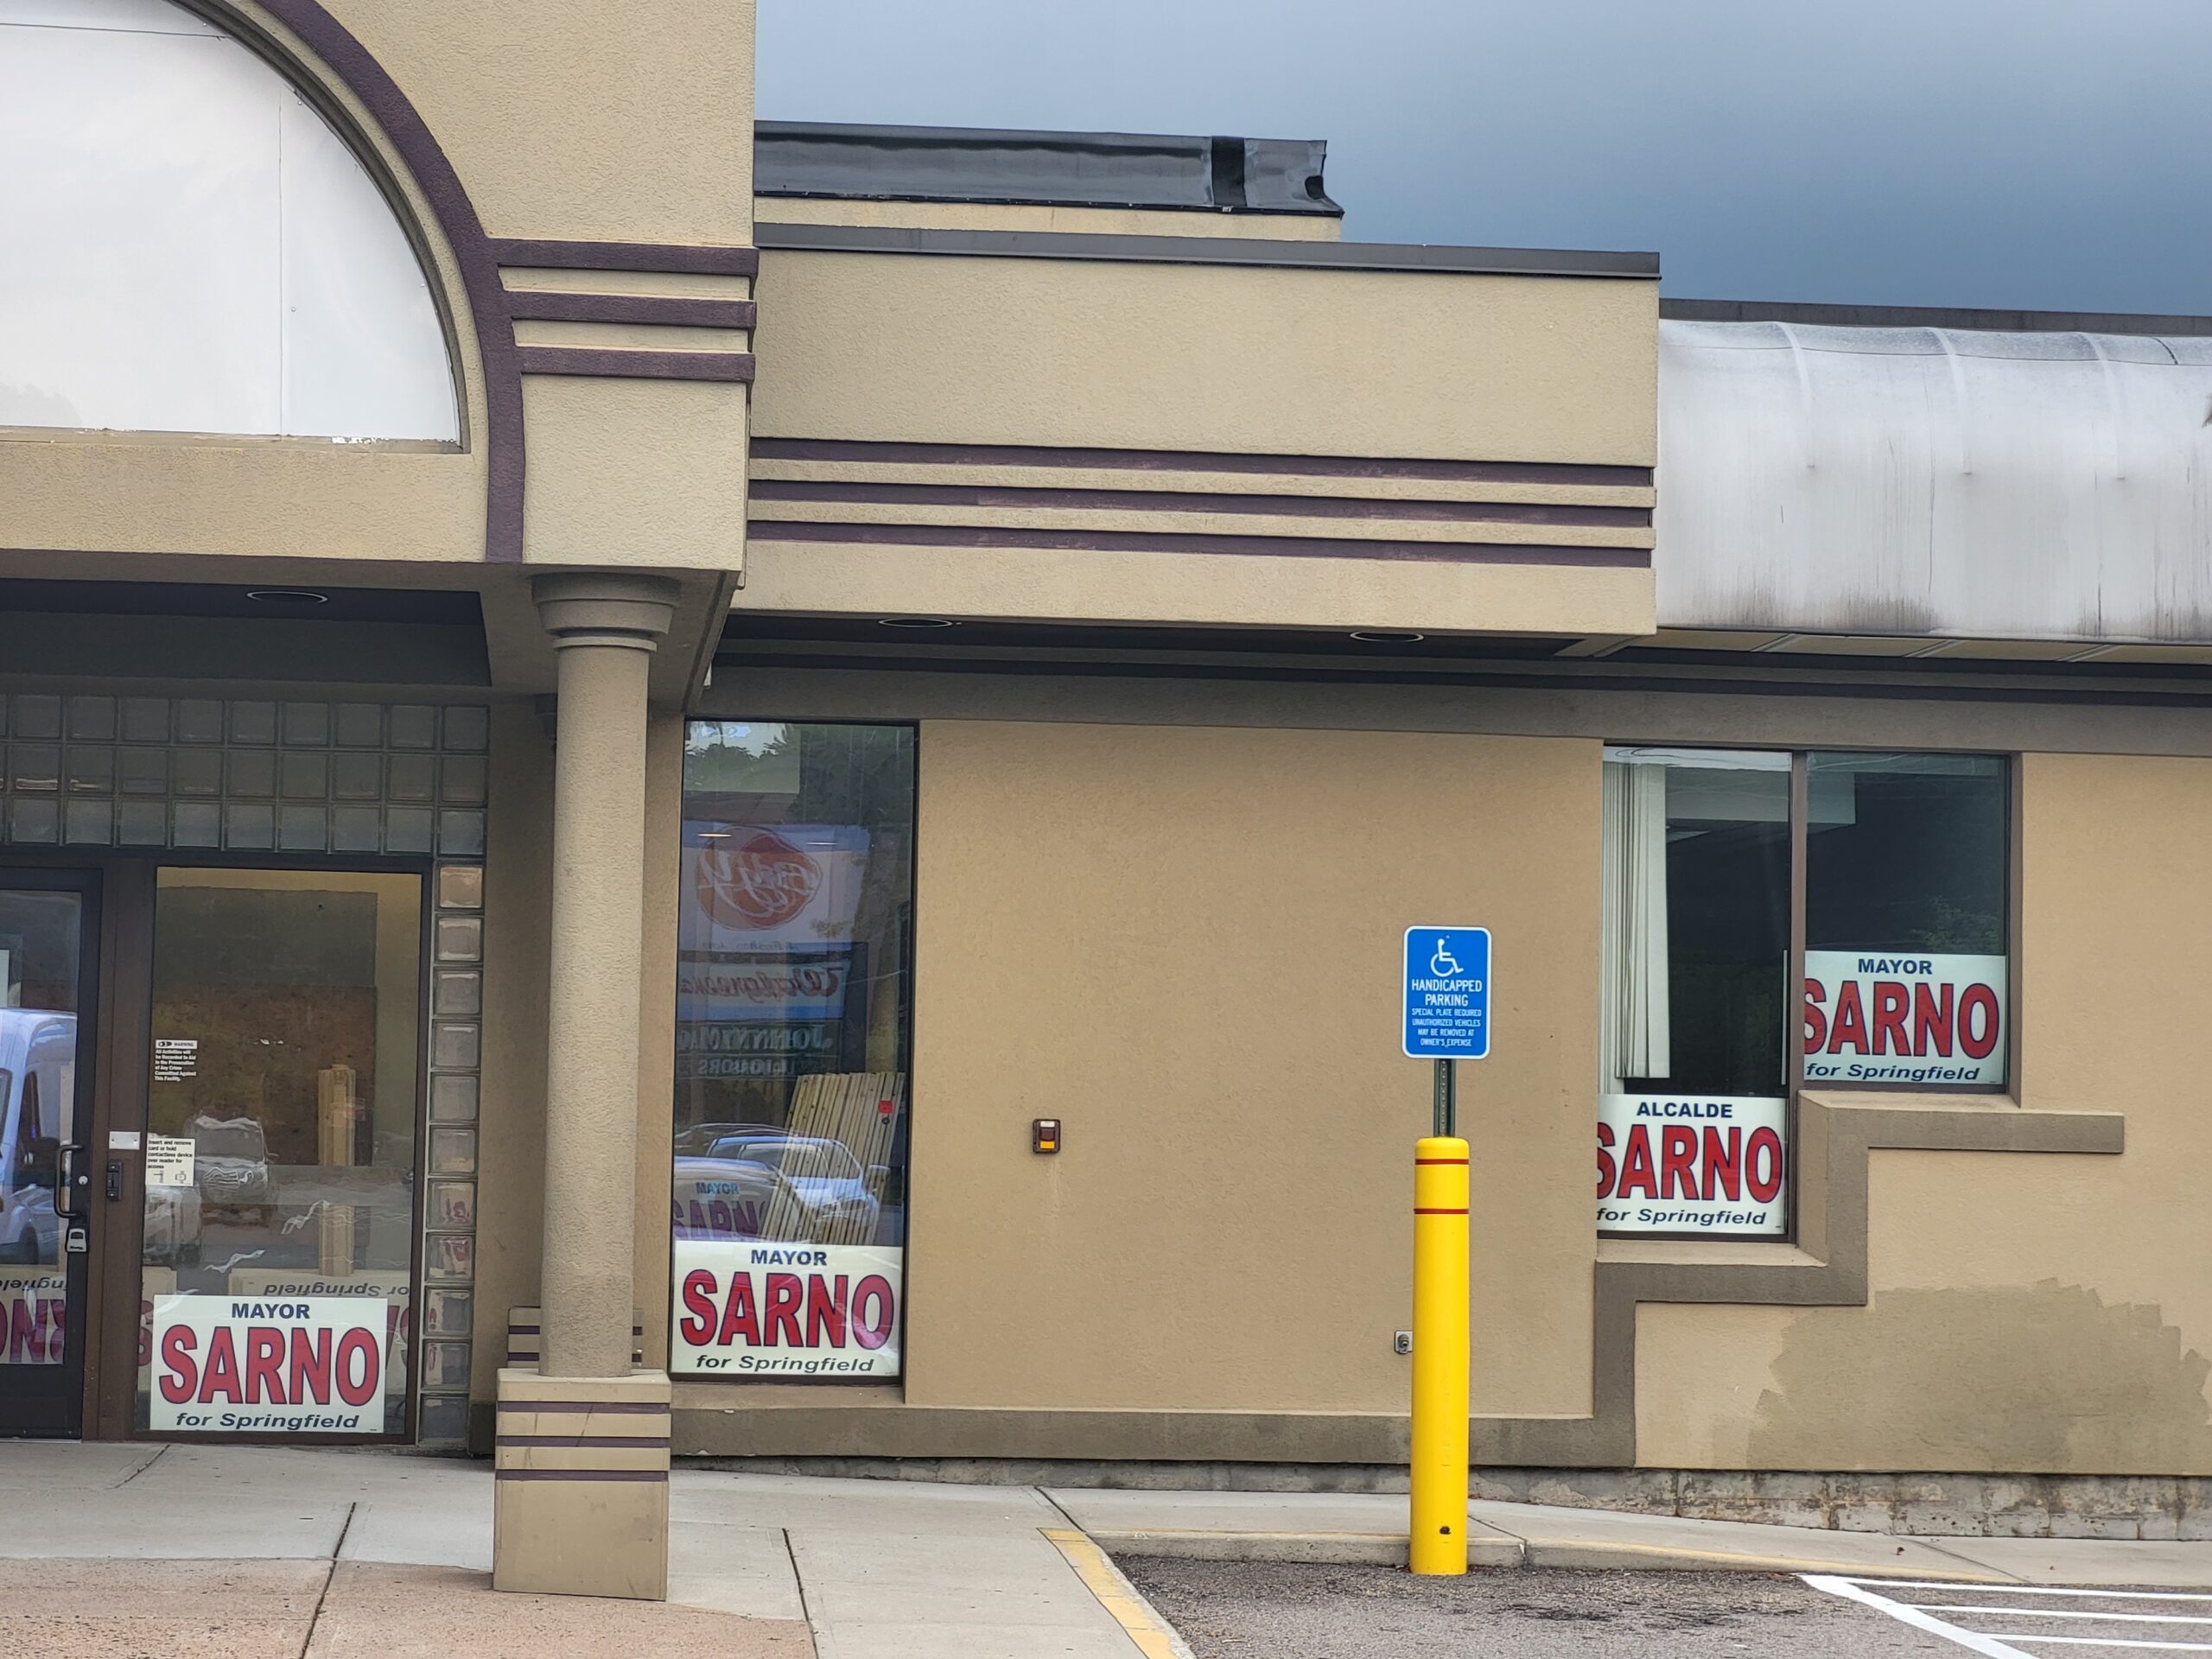 Sarno campaign office